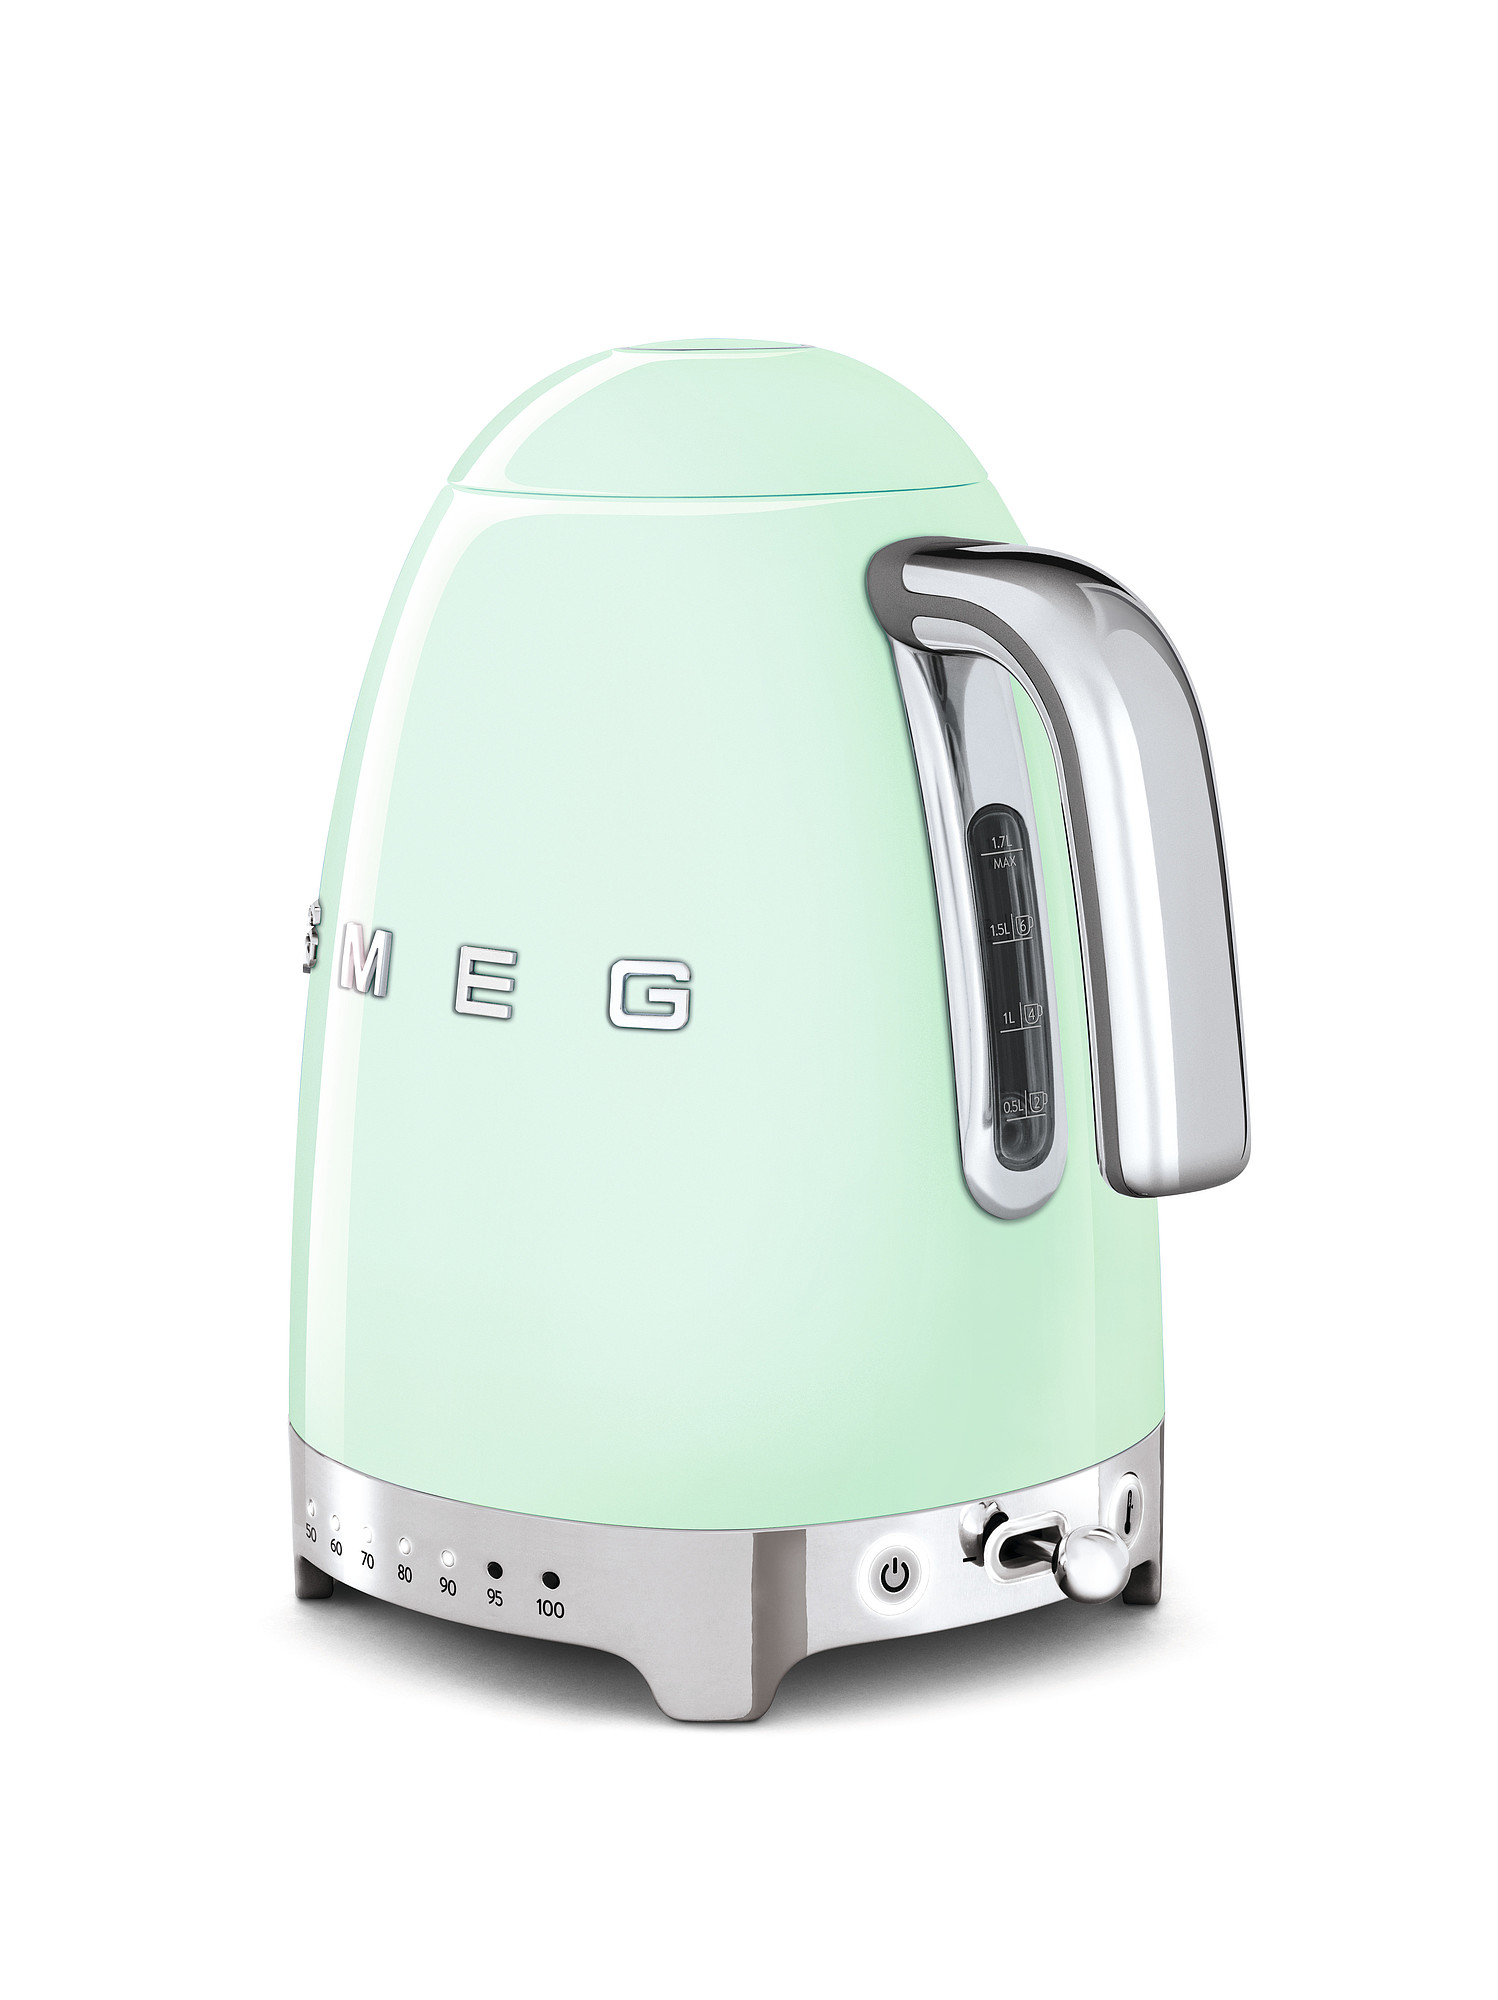 SMEG Wasserkocher mit Temperaturregelung - Toaster Set Pastellgrün